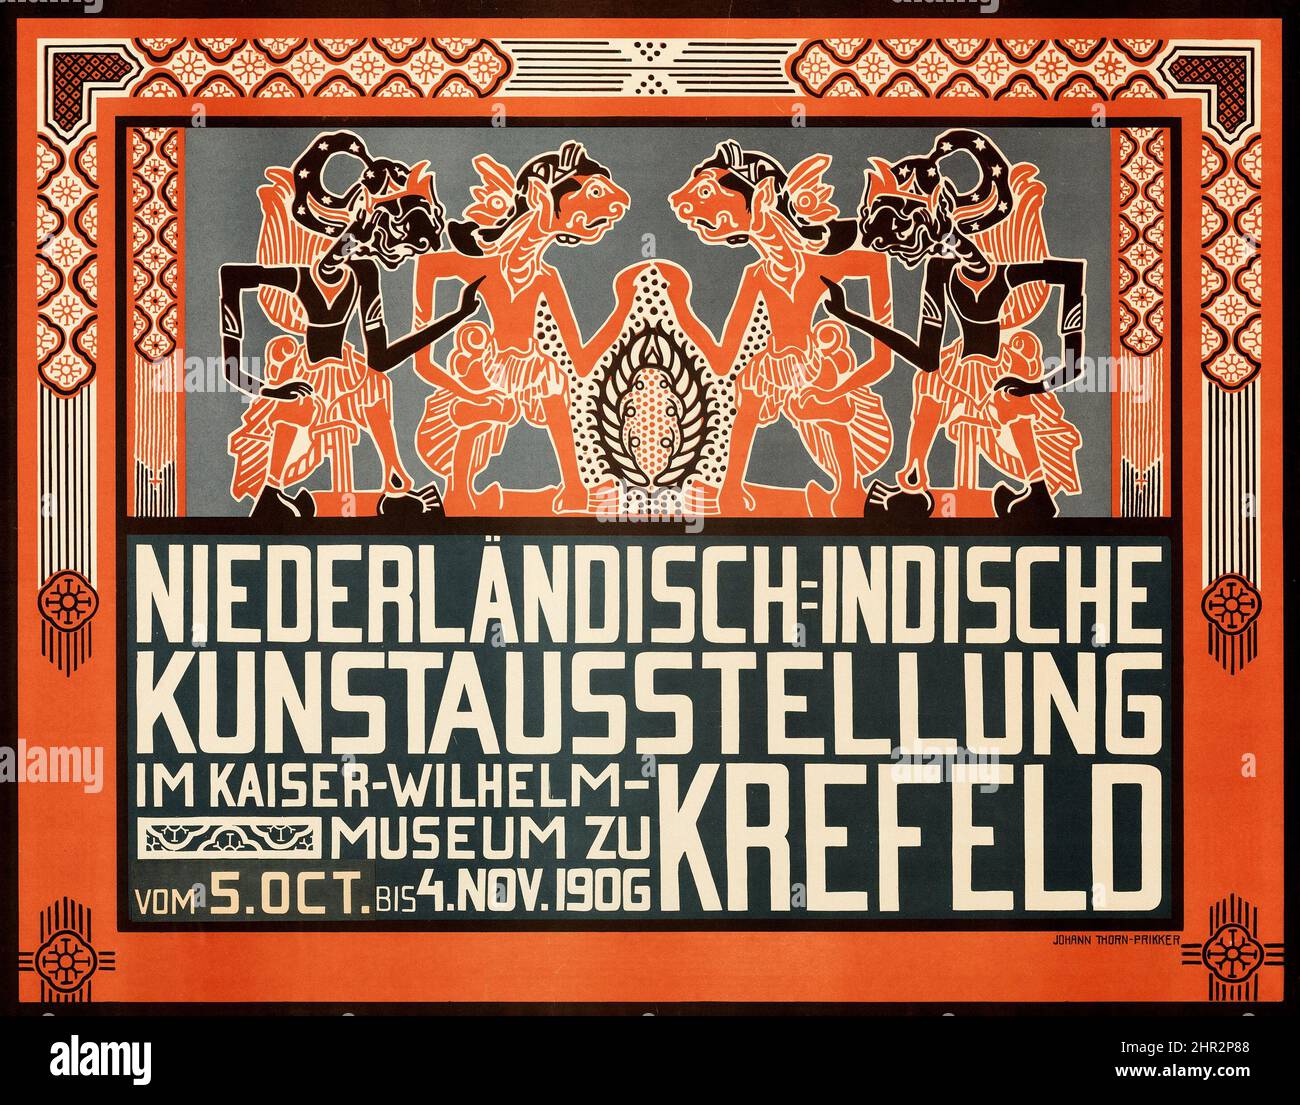 Affiche de l'exposition des Antilles néerlandaises (Krefeld Kaiser Wilhelm Museum, 1906). Affiche de l'exposition d'art allemand - affiche publicitaire vintage Banque D'Images